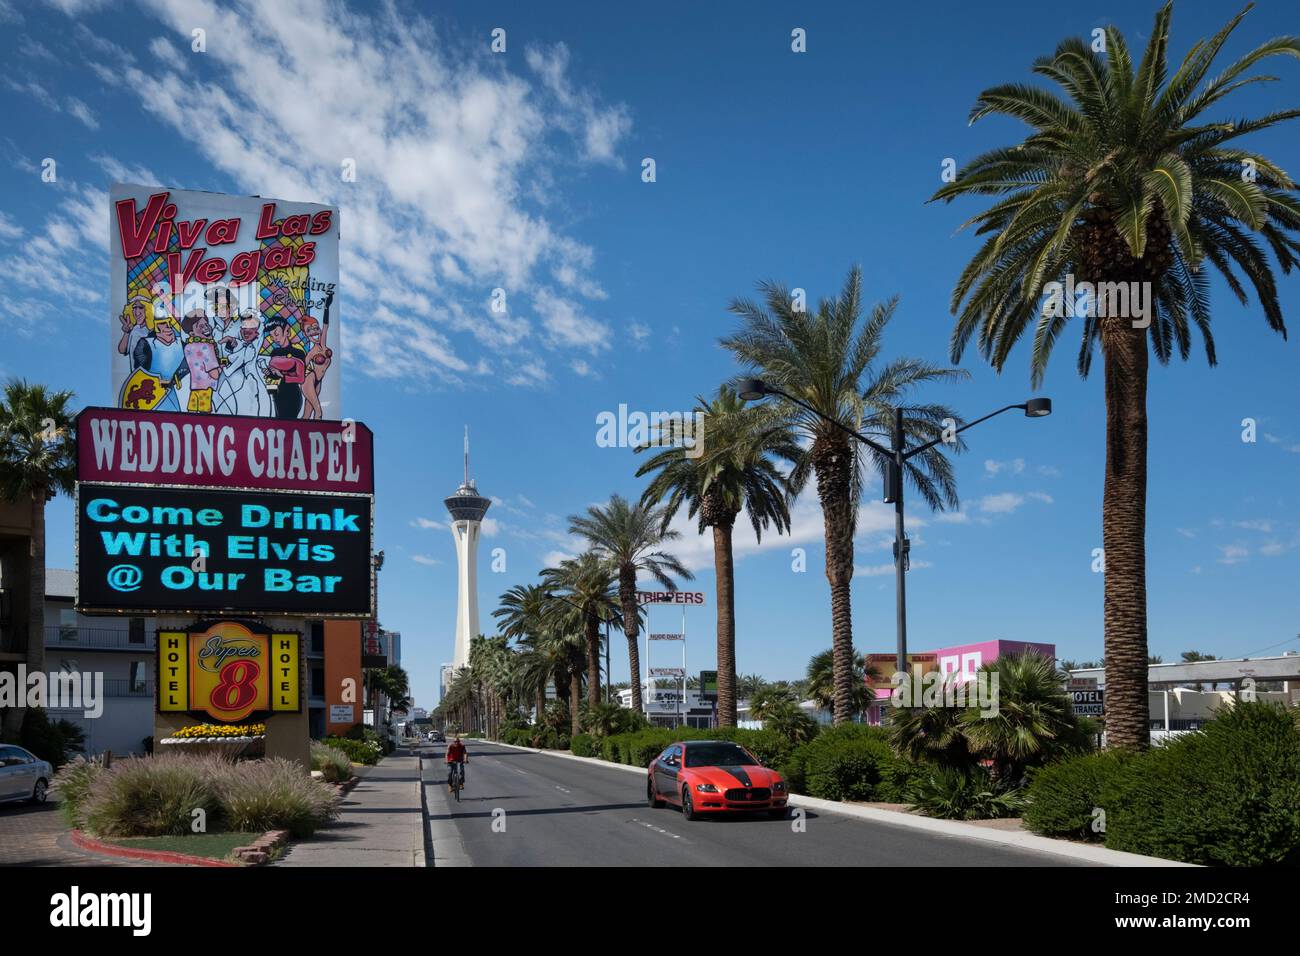 Viva Las Vegas Wedding Chapel, STRAT Tower and Las Vegas Boulevard, Las Vegas, Nevada, USA Stock Photo